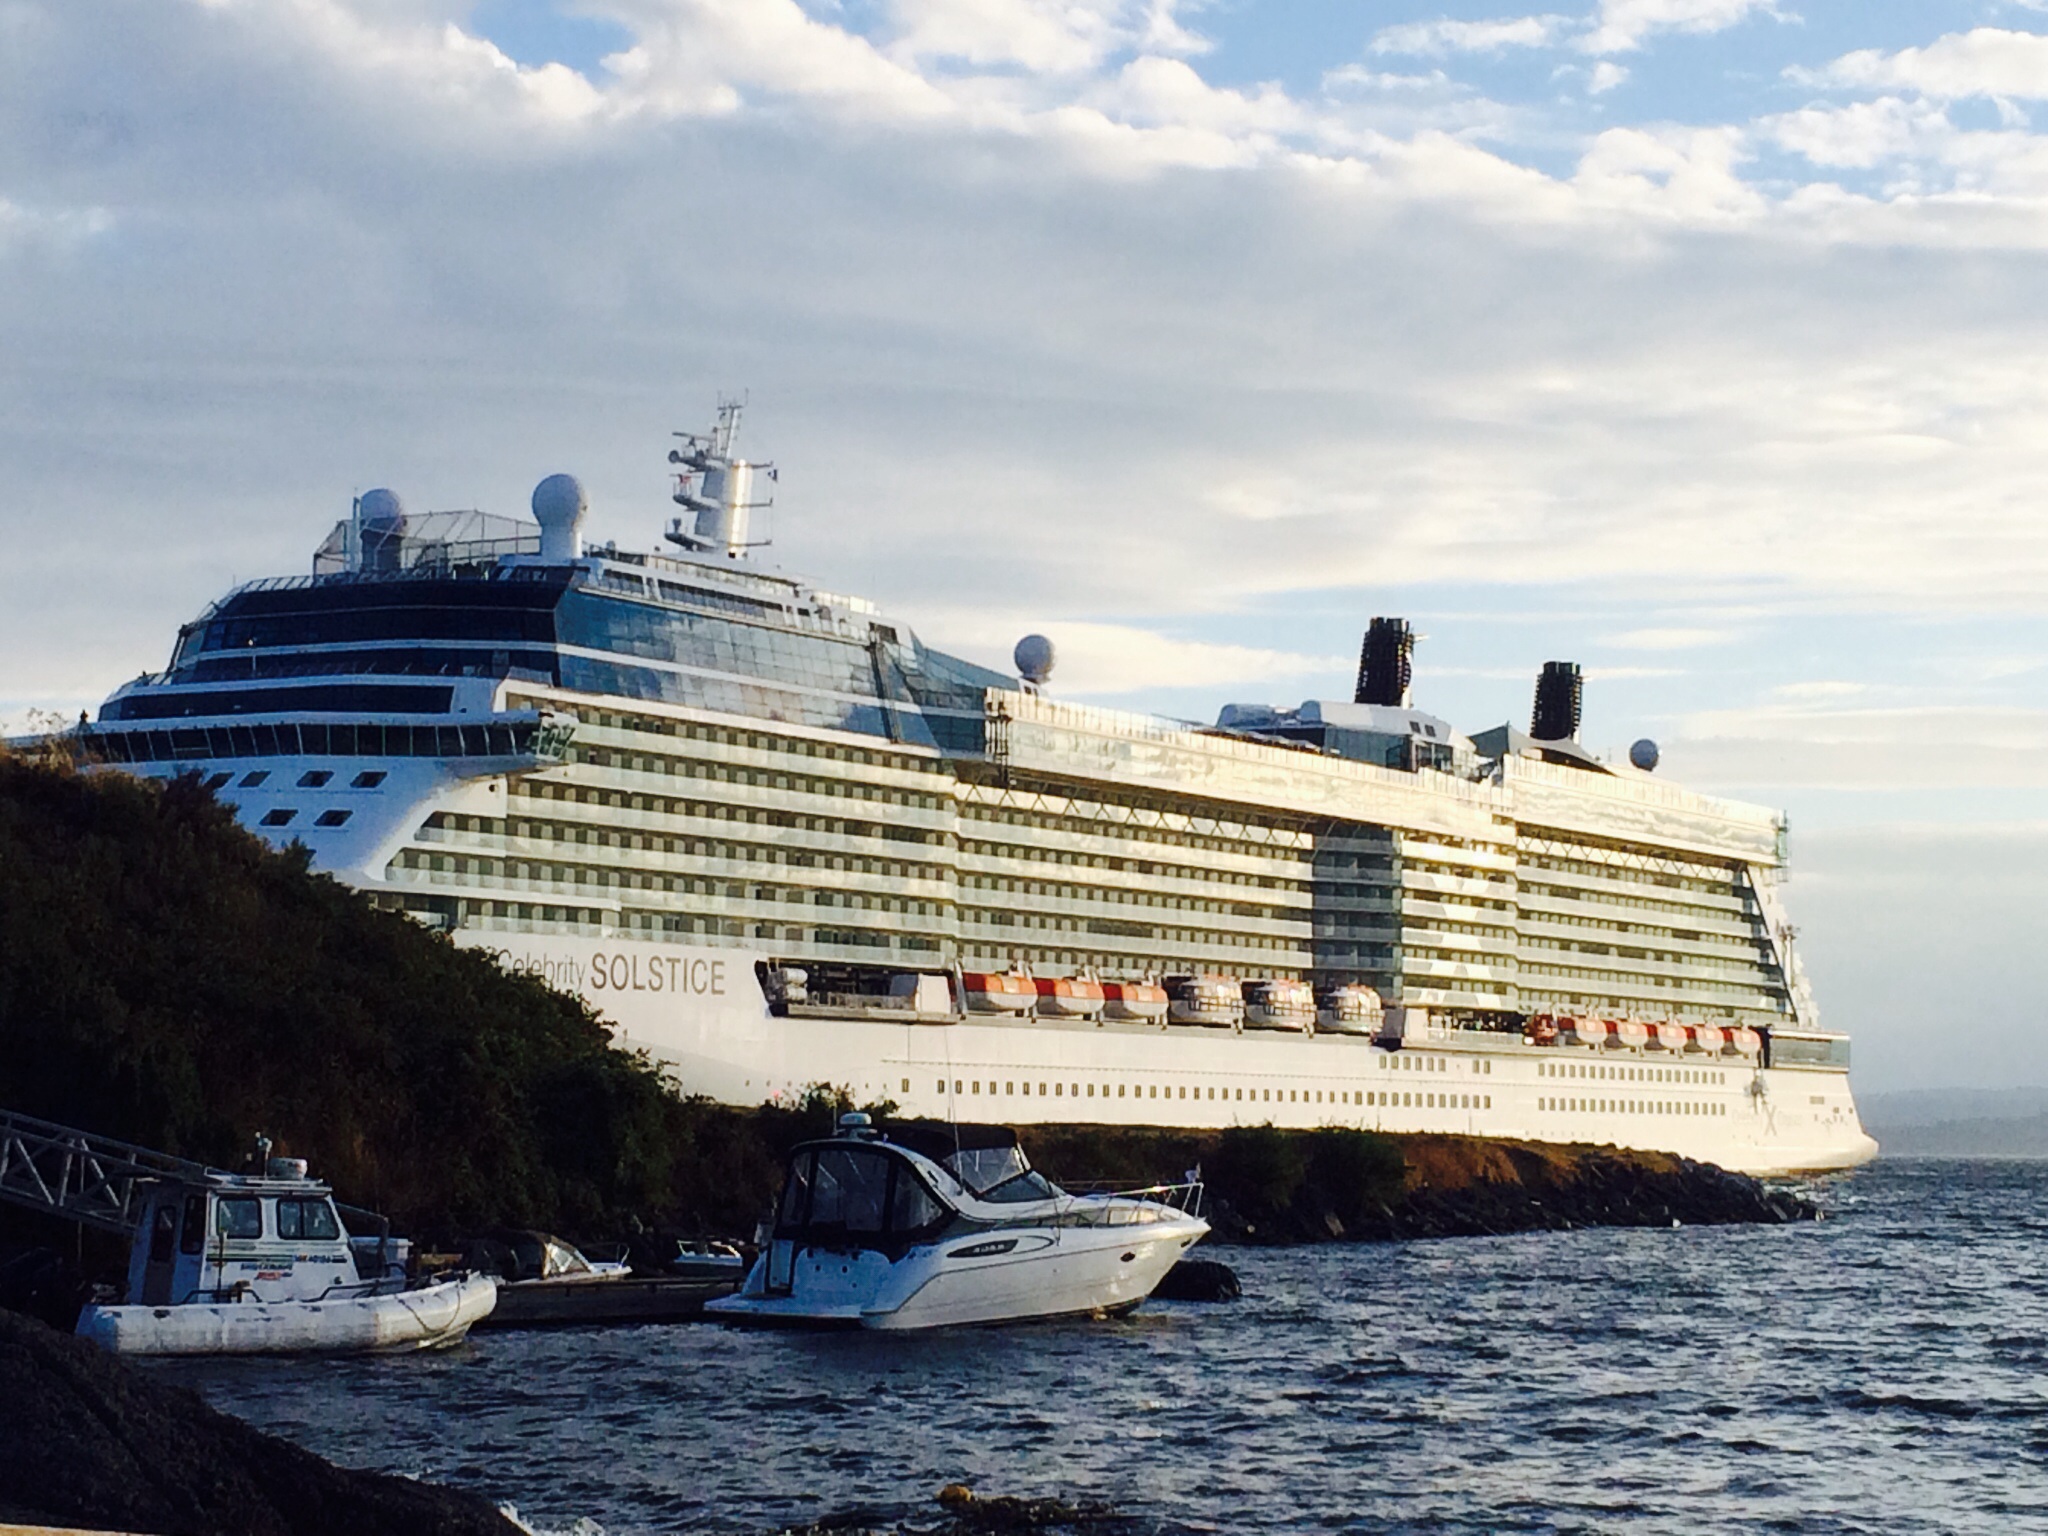 Alaskan Cruise Ship Celebrity Cruise Ships Ogden Point